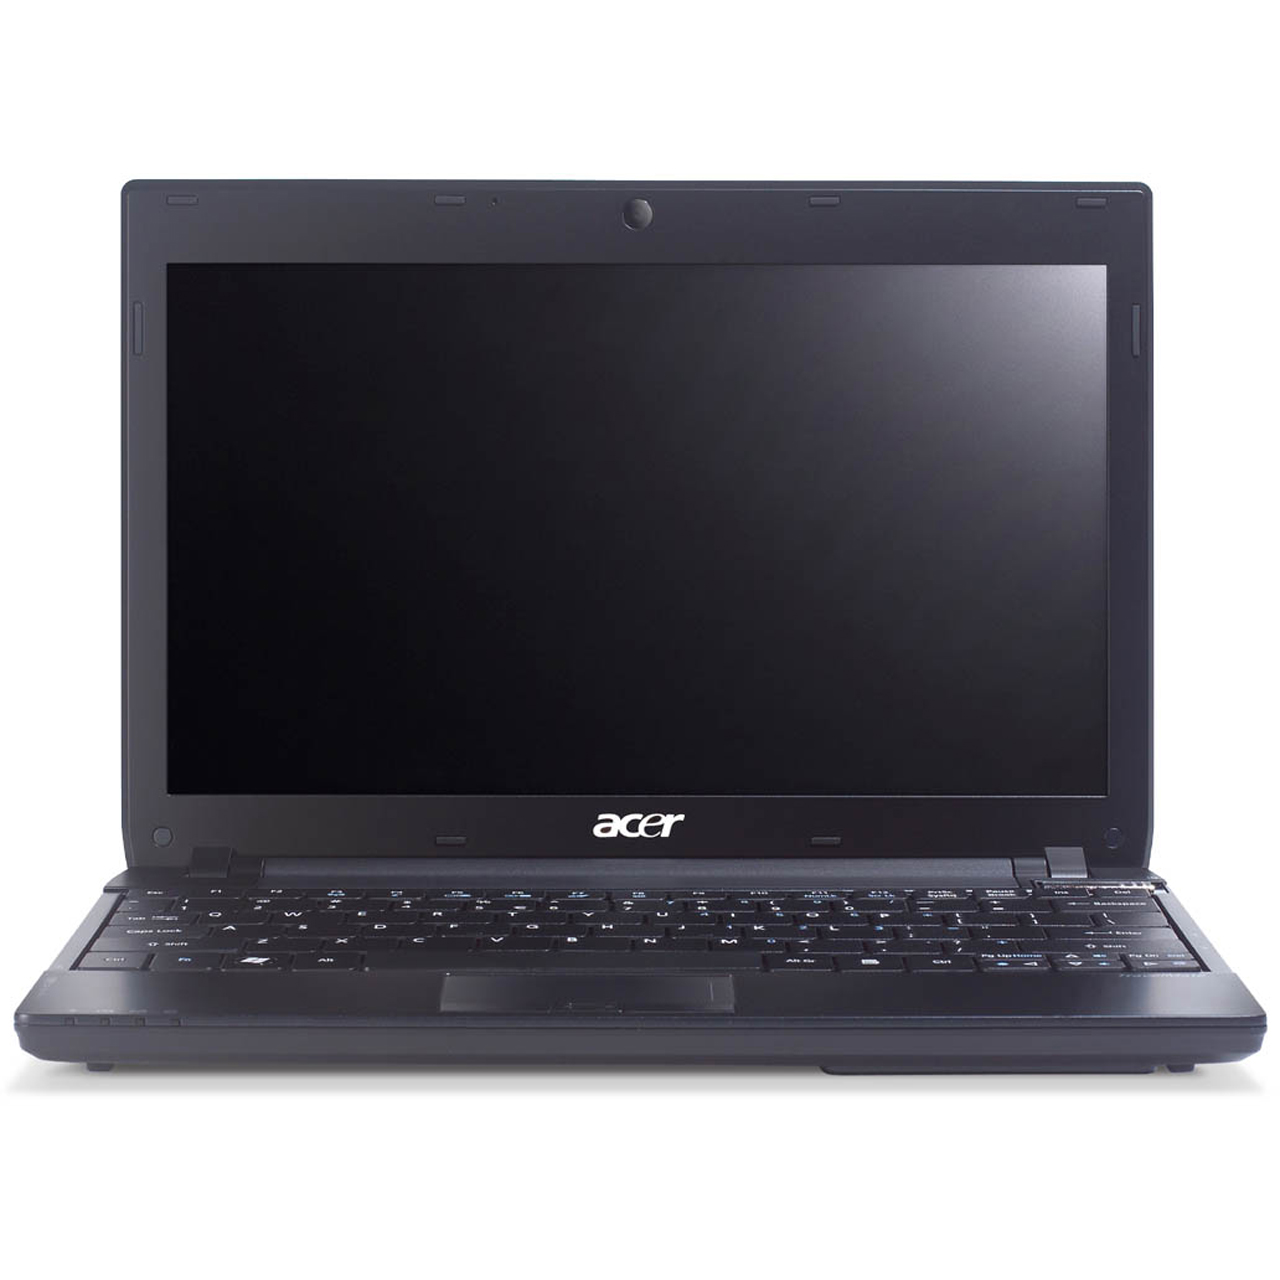 Acer Timeline 8172 Notebook